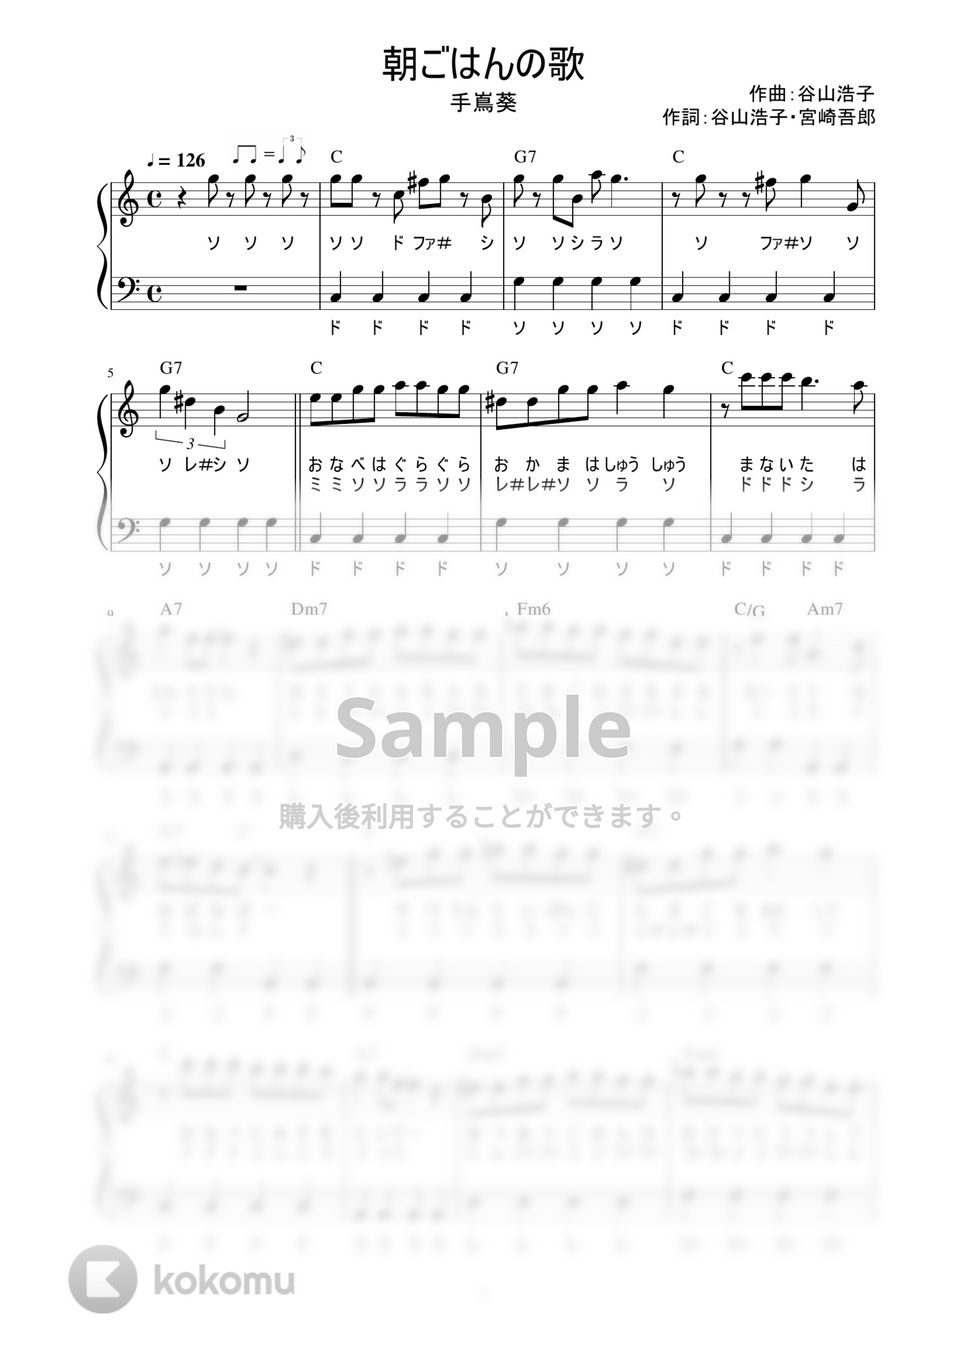 手嶌葵 - 朝ごはんの歌 (かんたん / 歌詞付き / ドレミ付き / 初心者) by piano.tokyo